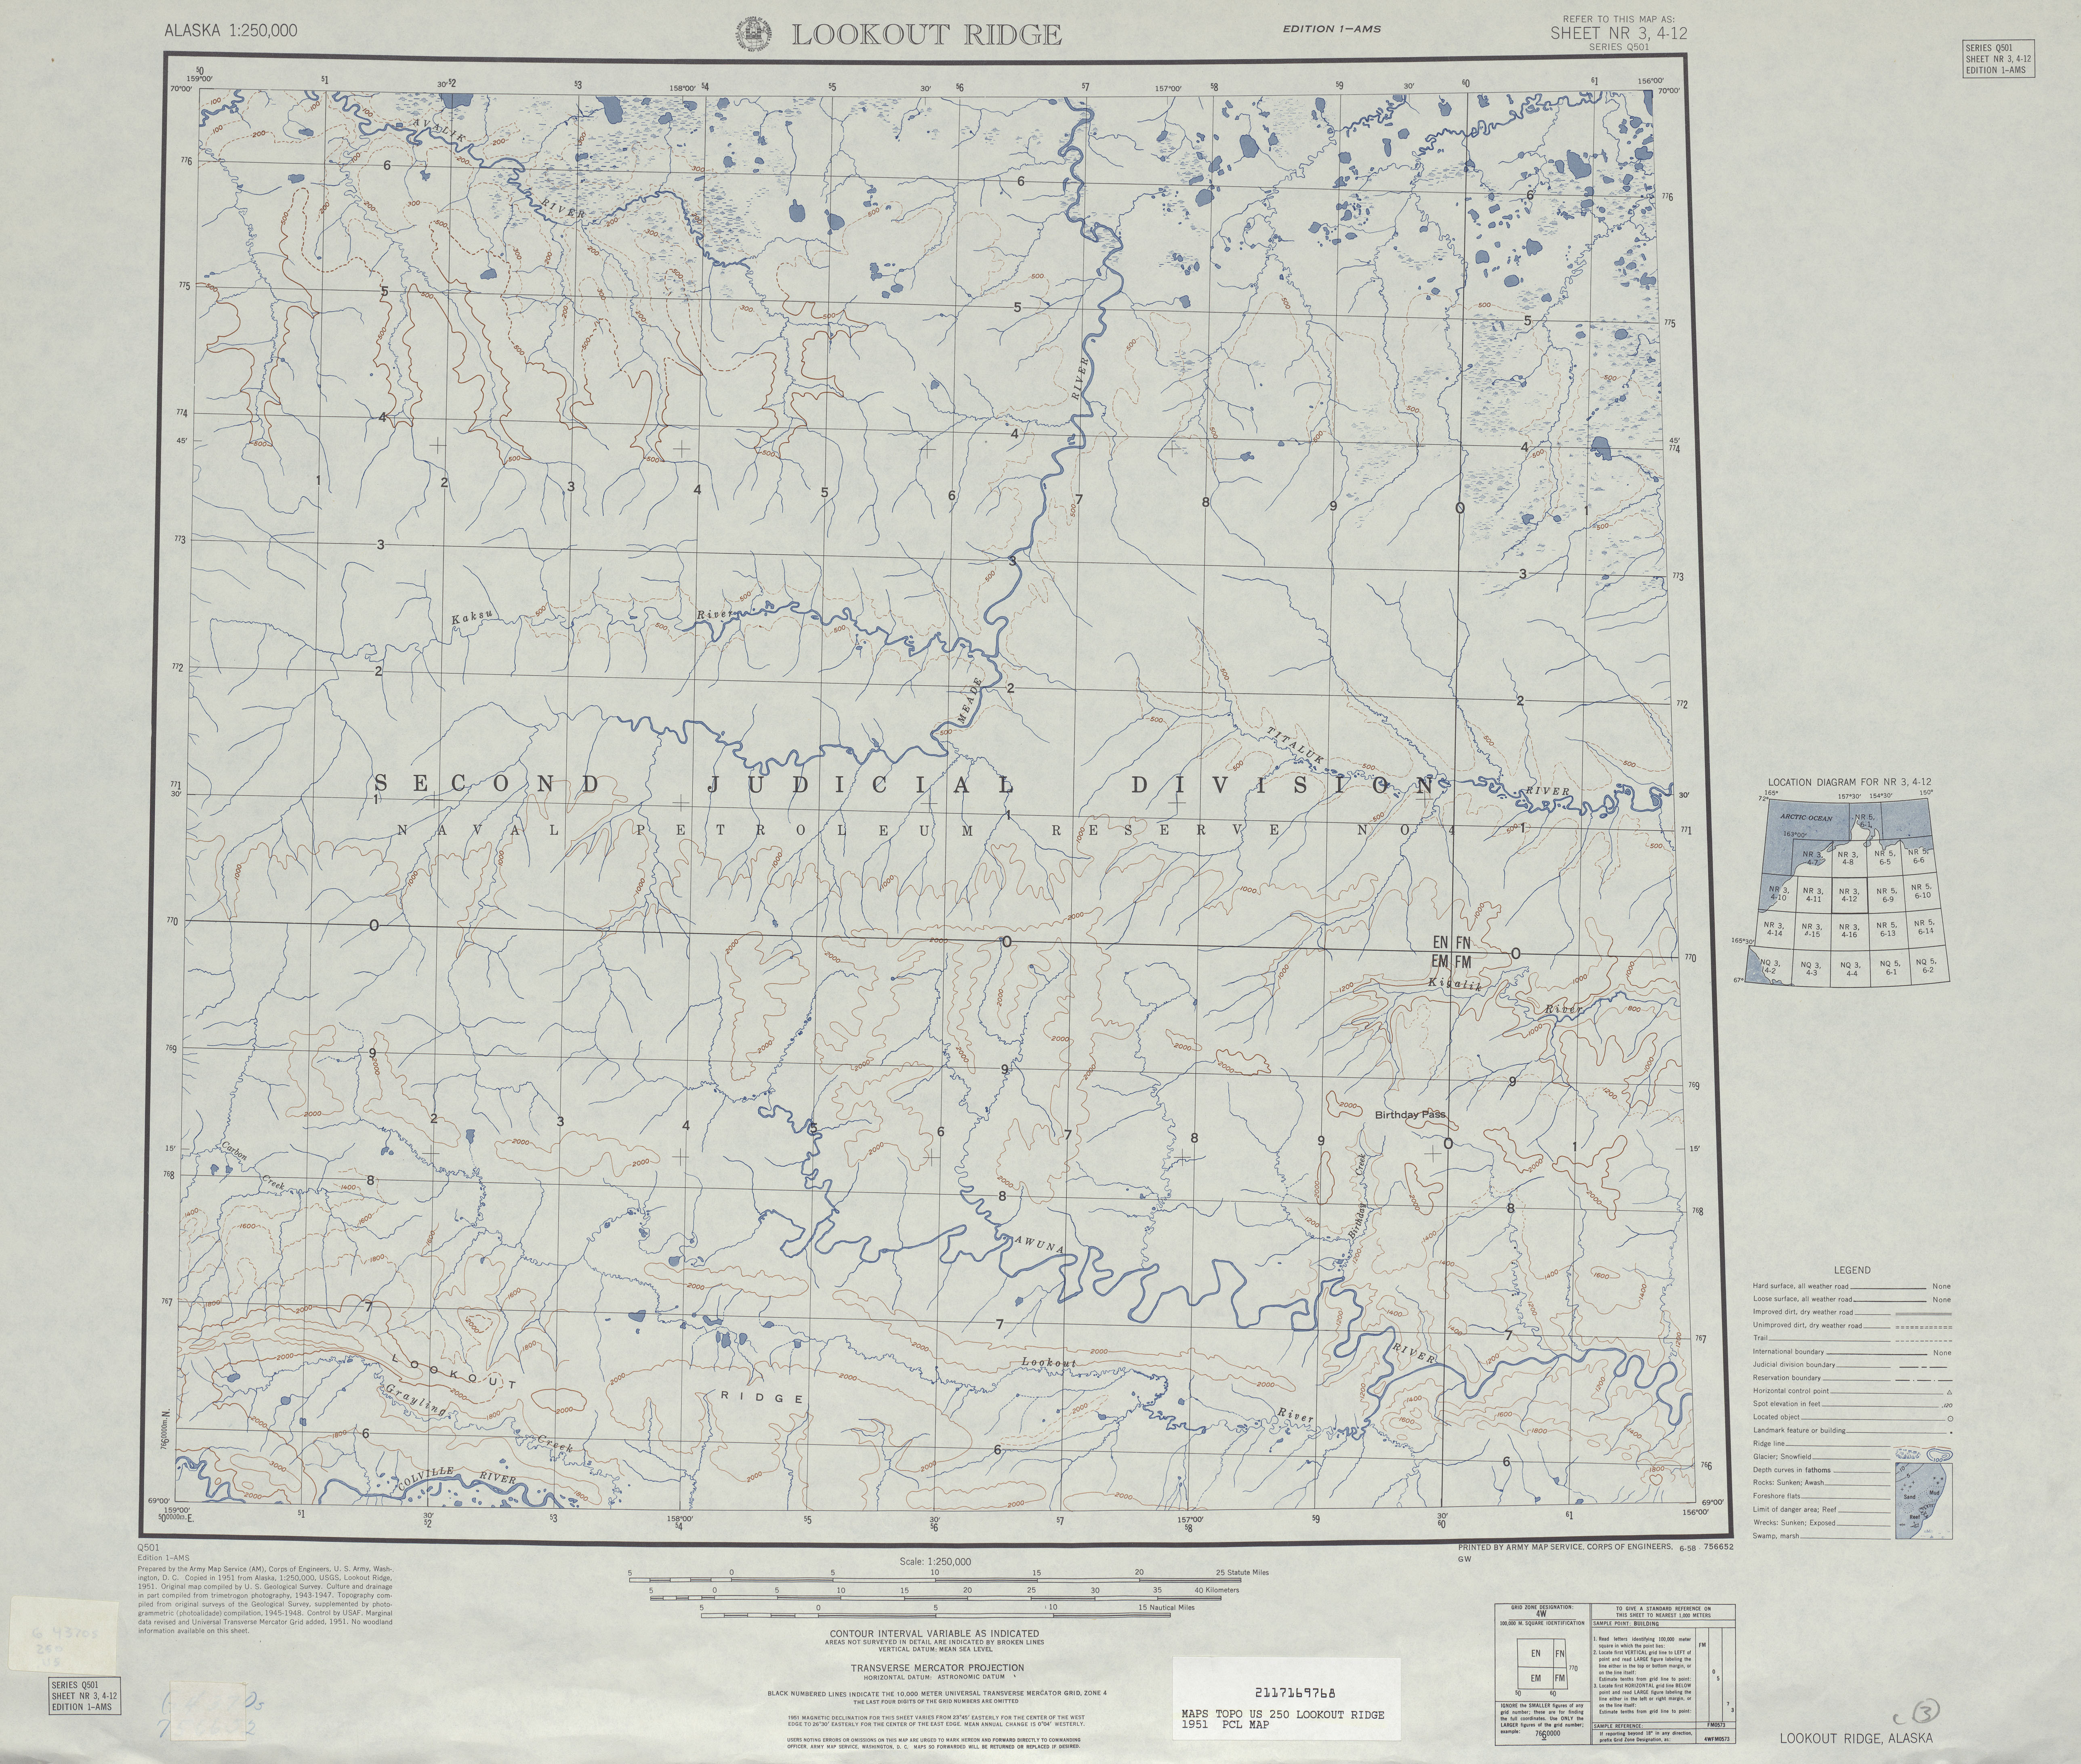 Hoja Lookout Ridge del Mapa Topográfico de los Estados Unidos 1951